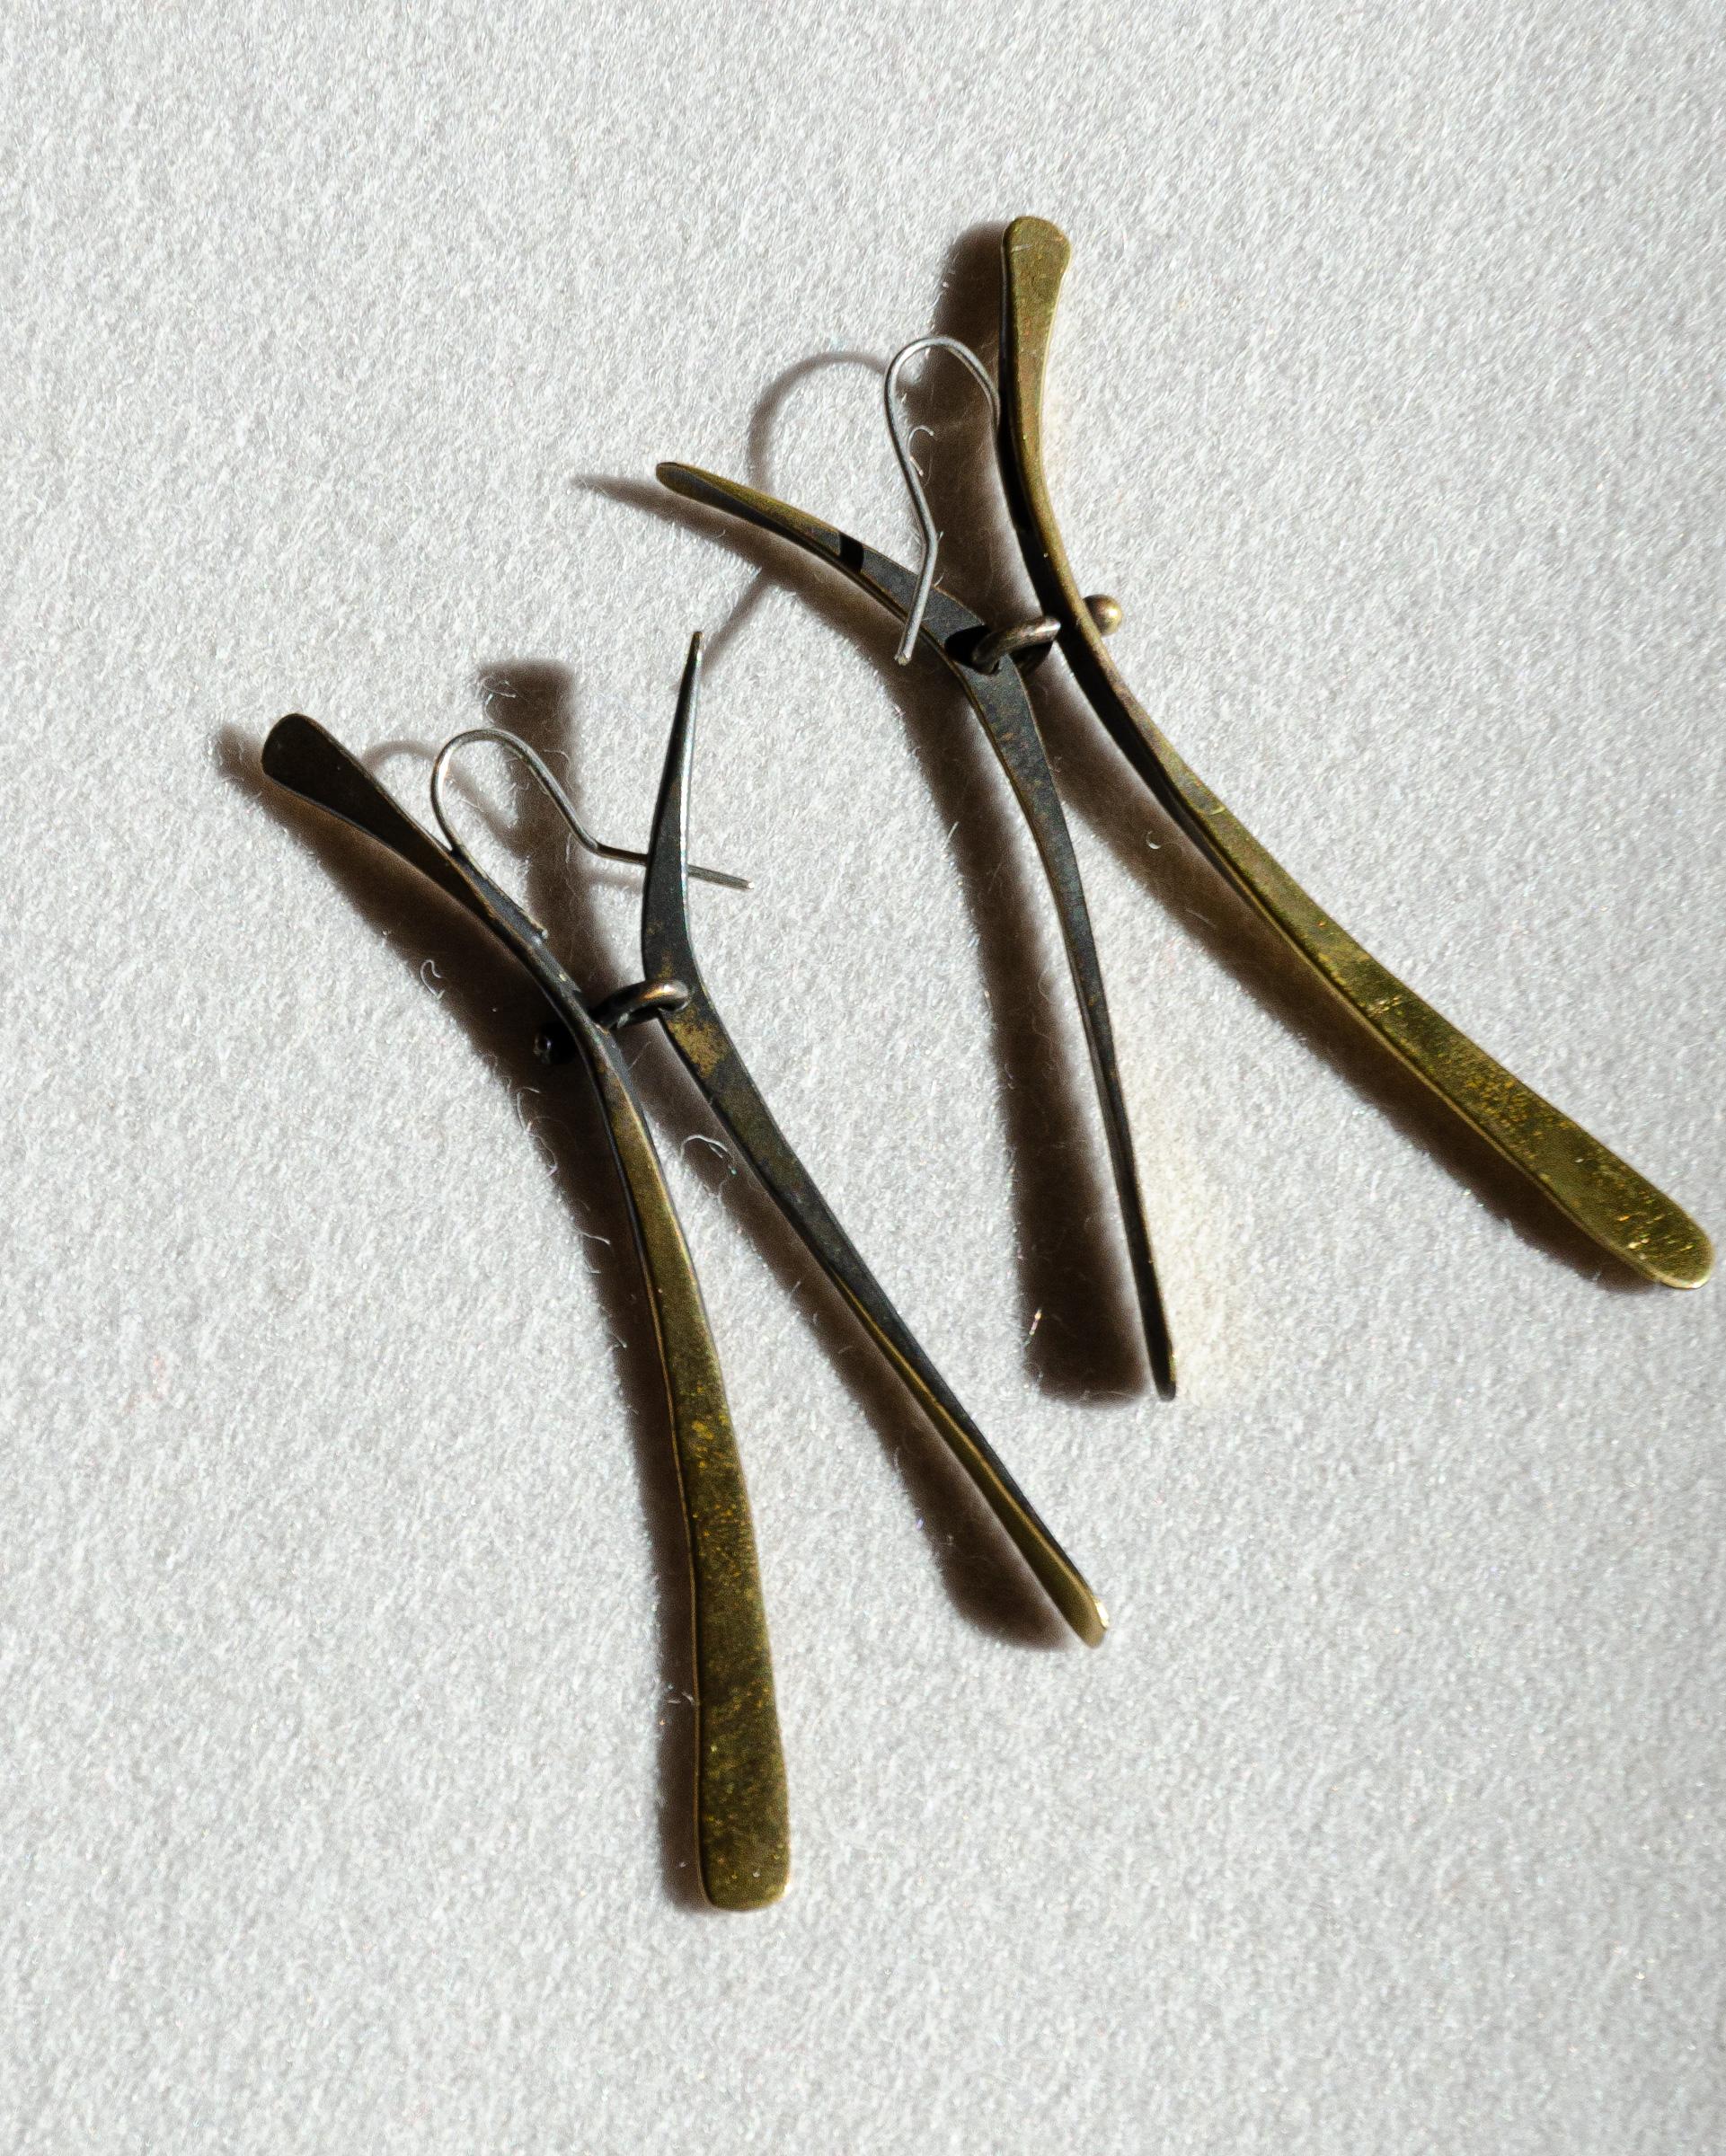 Exceptionnelle et paire de boucles d'oreilles cinétiques conçues par le bijoutier moderniste de Greenwich Village Art Smith dans les années 1950. Jewell est considéré comme l'un des maîtres joailliers du mouvement moderniste du milieu du XXe siècle.